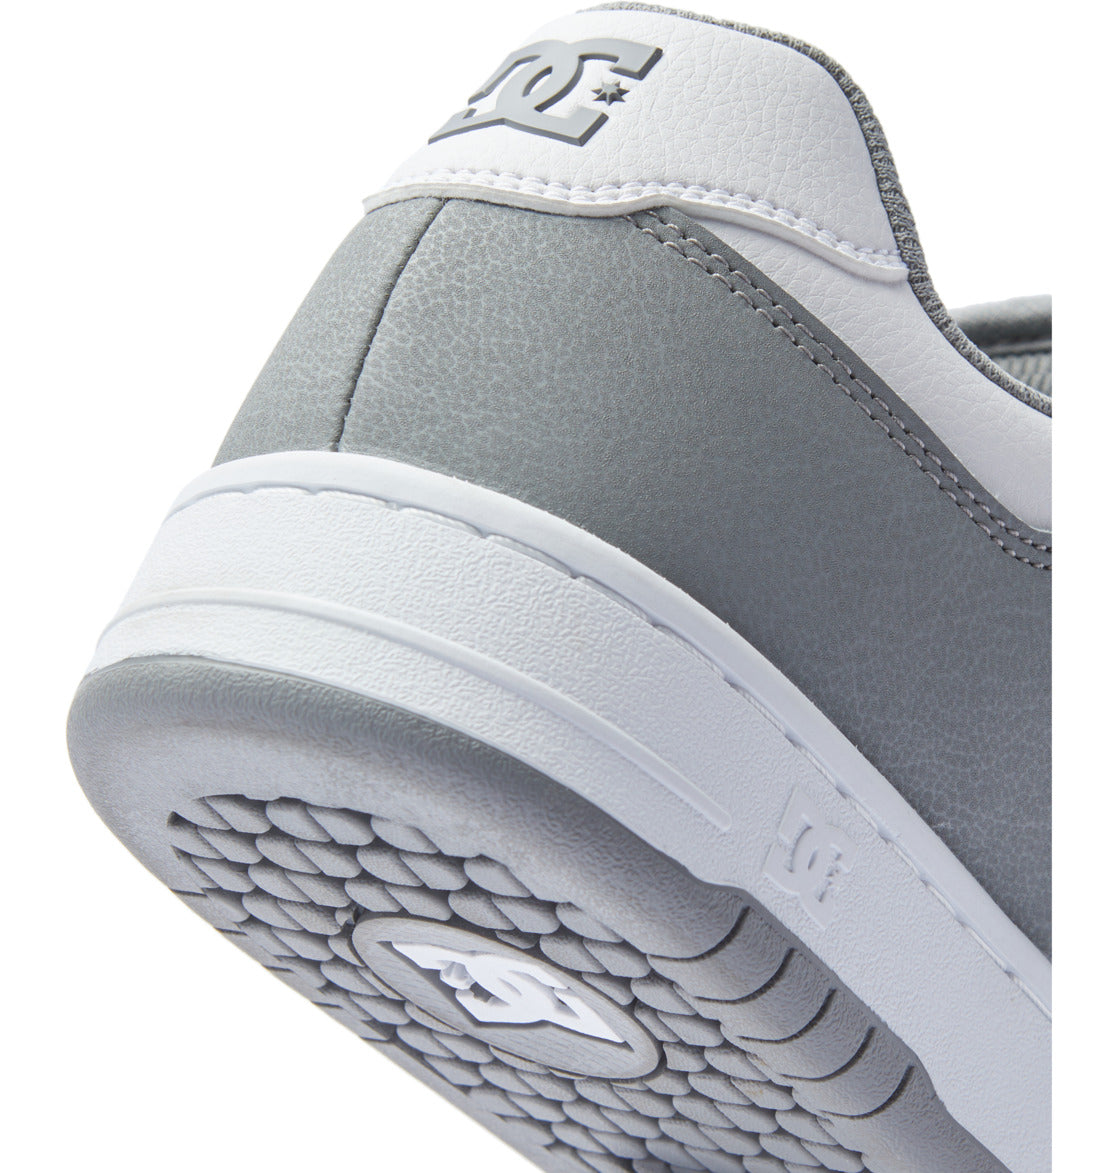 Dc Shoes Manteca 4 Skateschuh - Weiß Grau